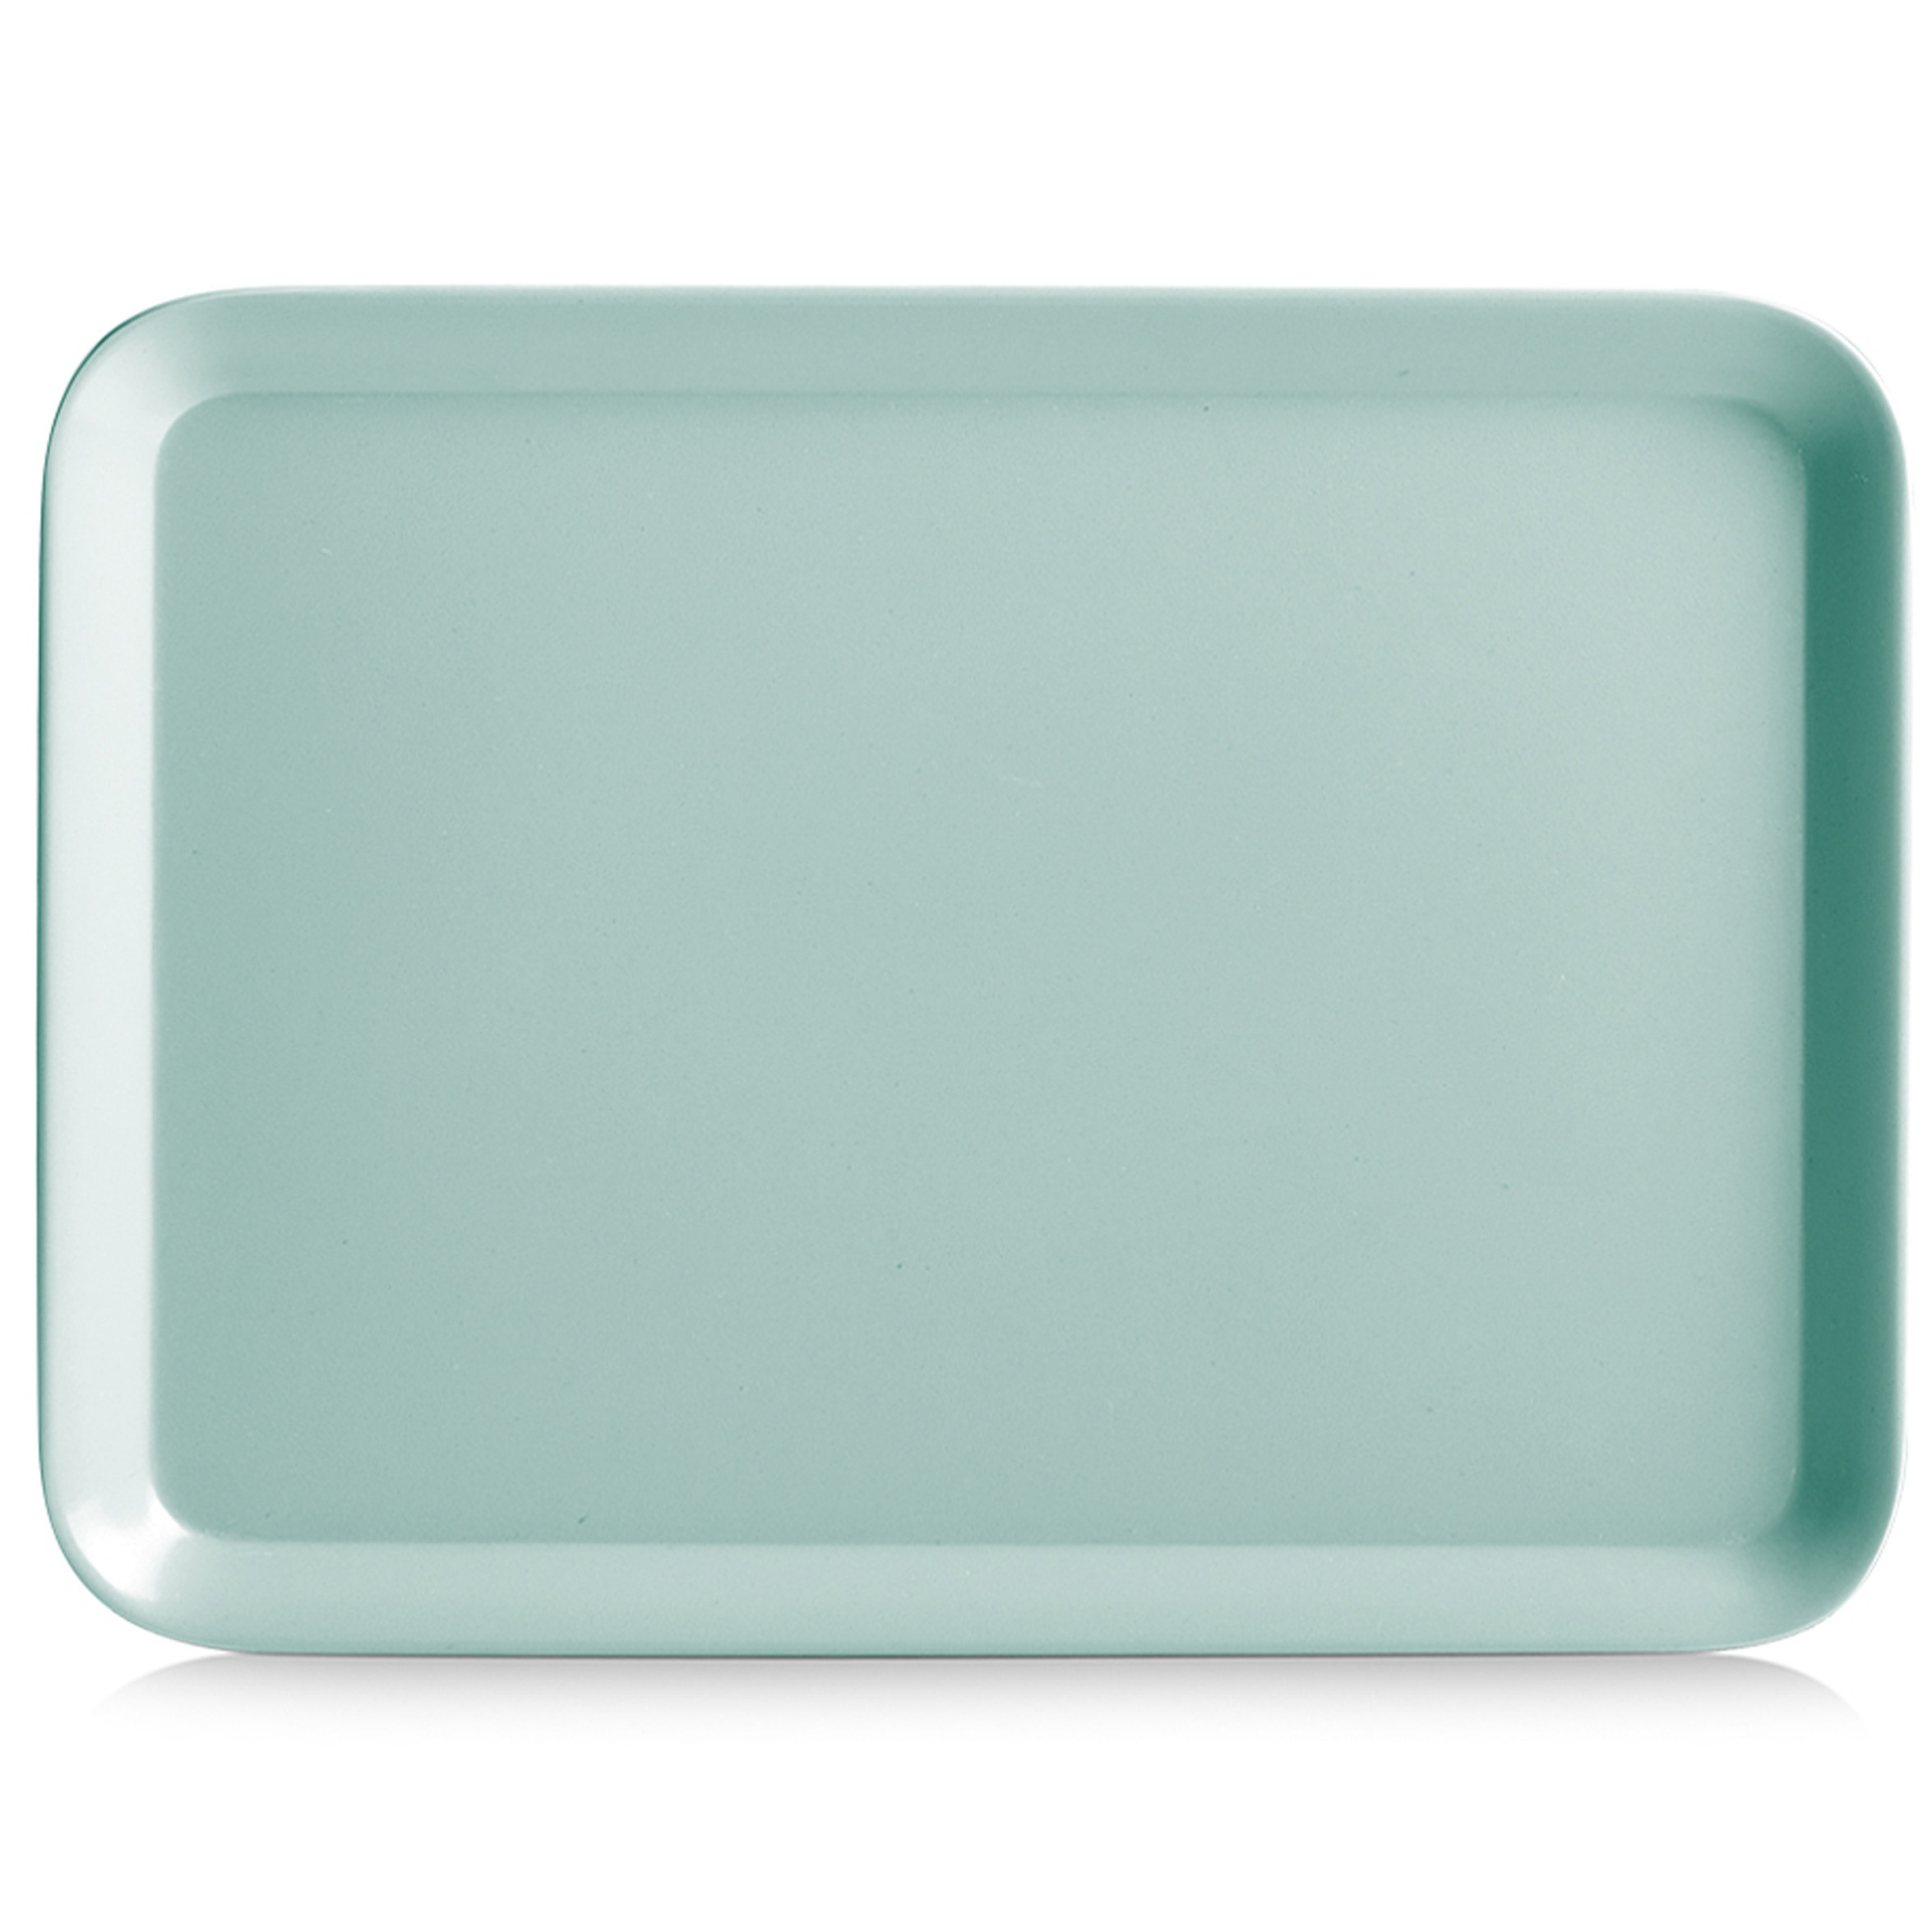 Zeller Dienblad - rechthoek - aqua blauw - kunststof - 24 x 18 cm -